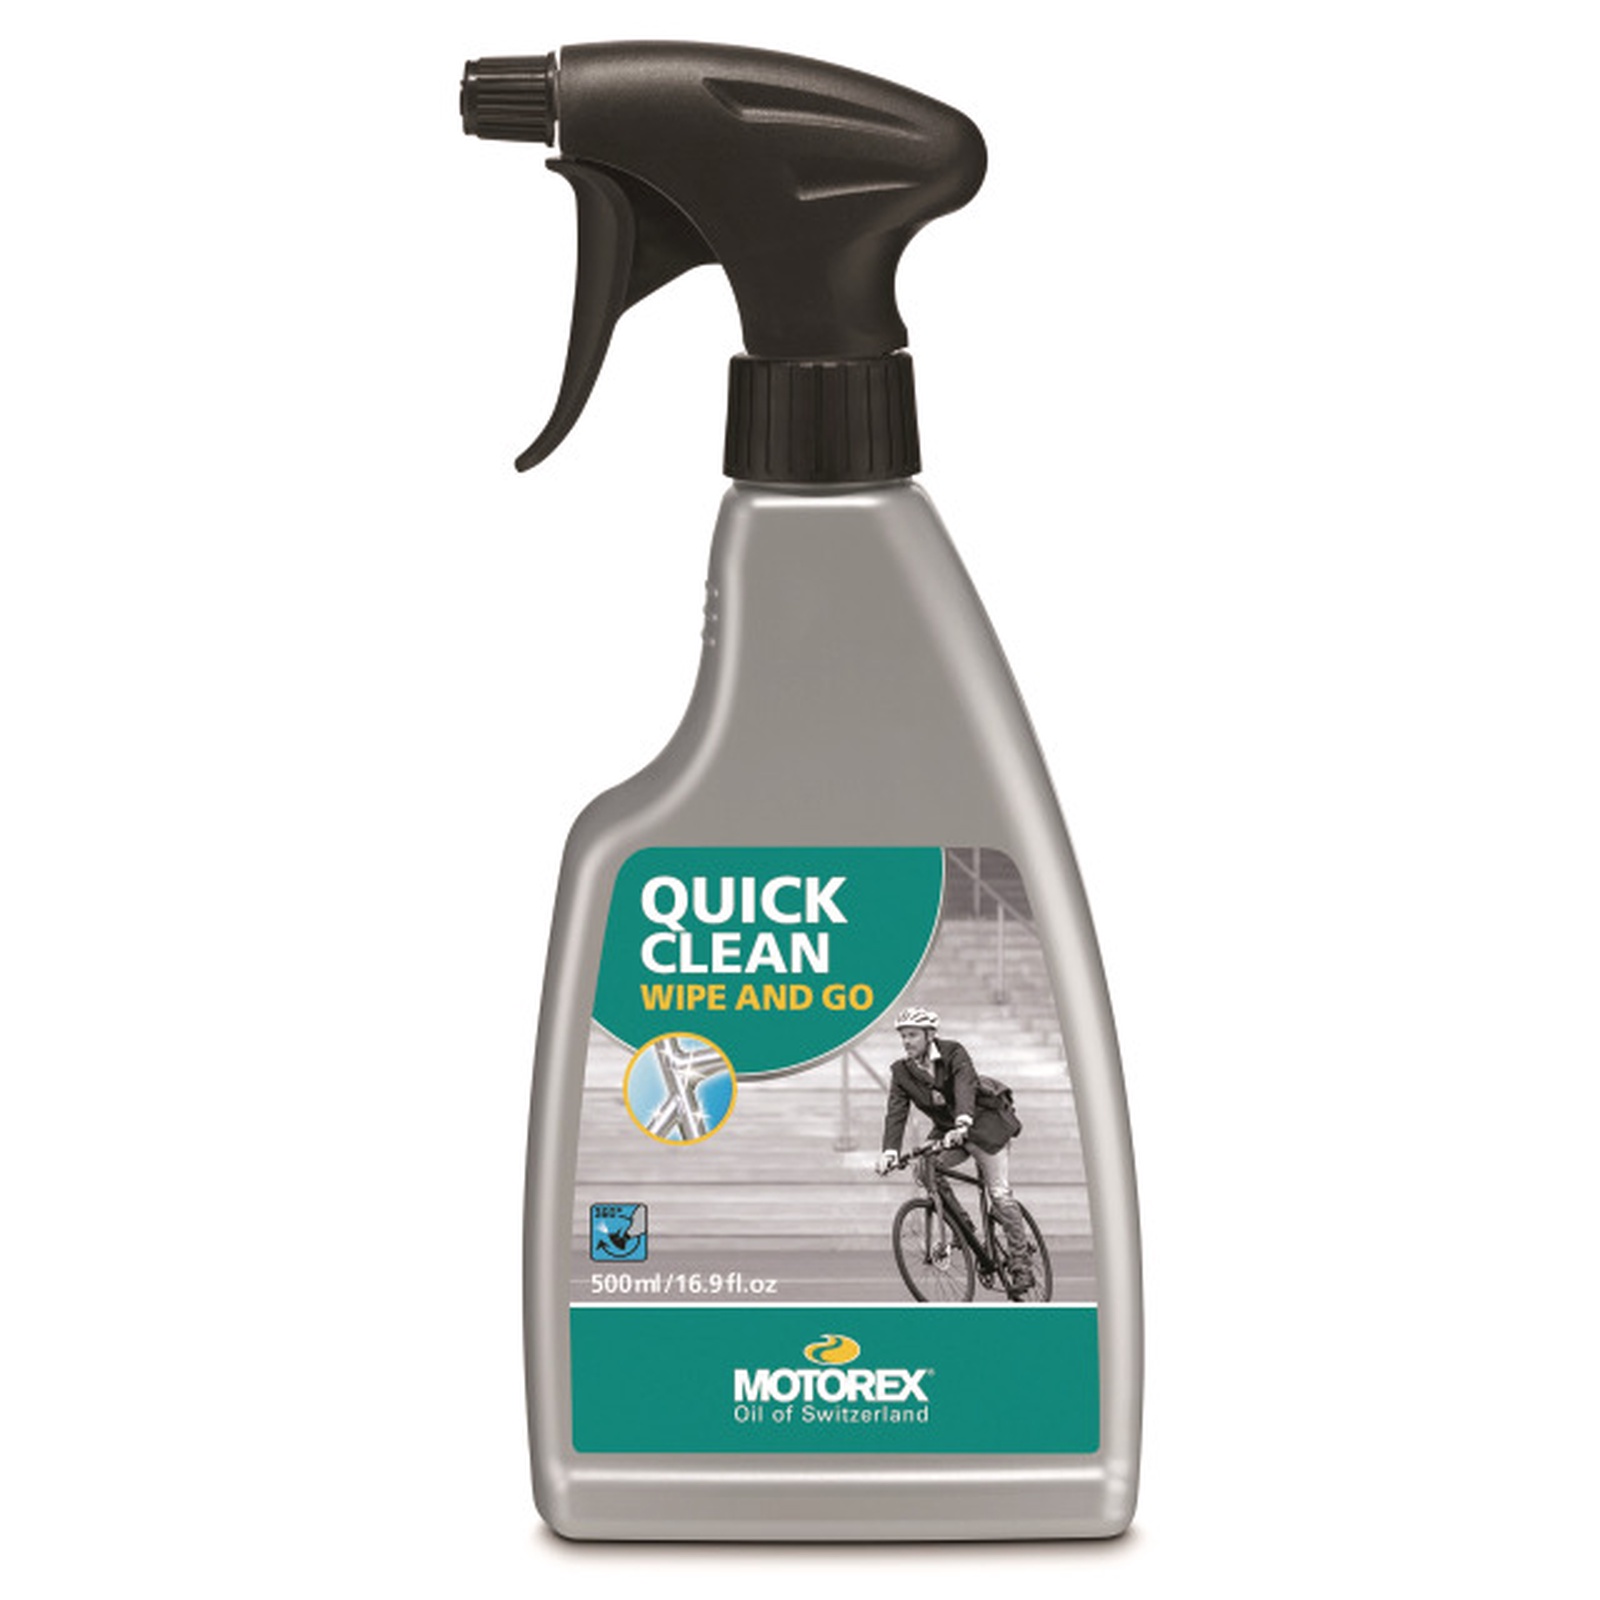 Quick Clean nettoyant vélo 500 ml